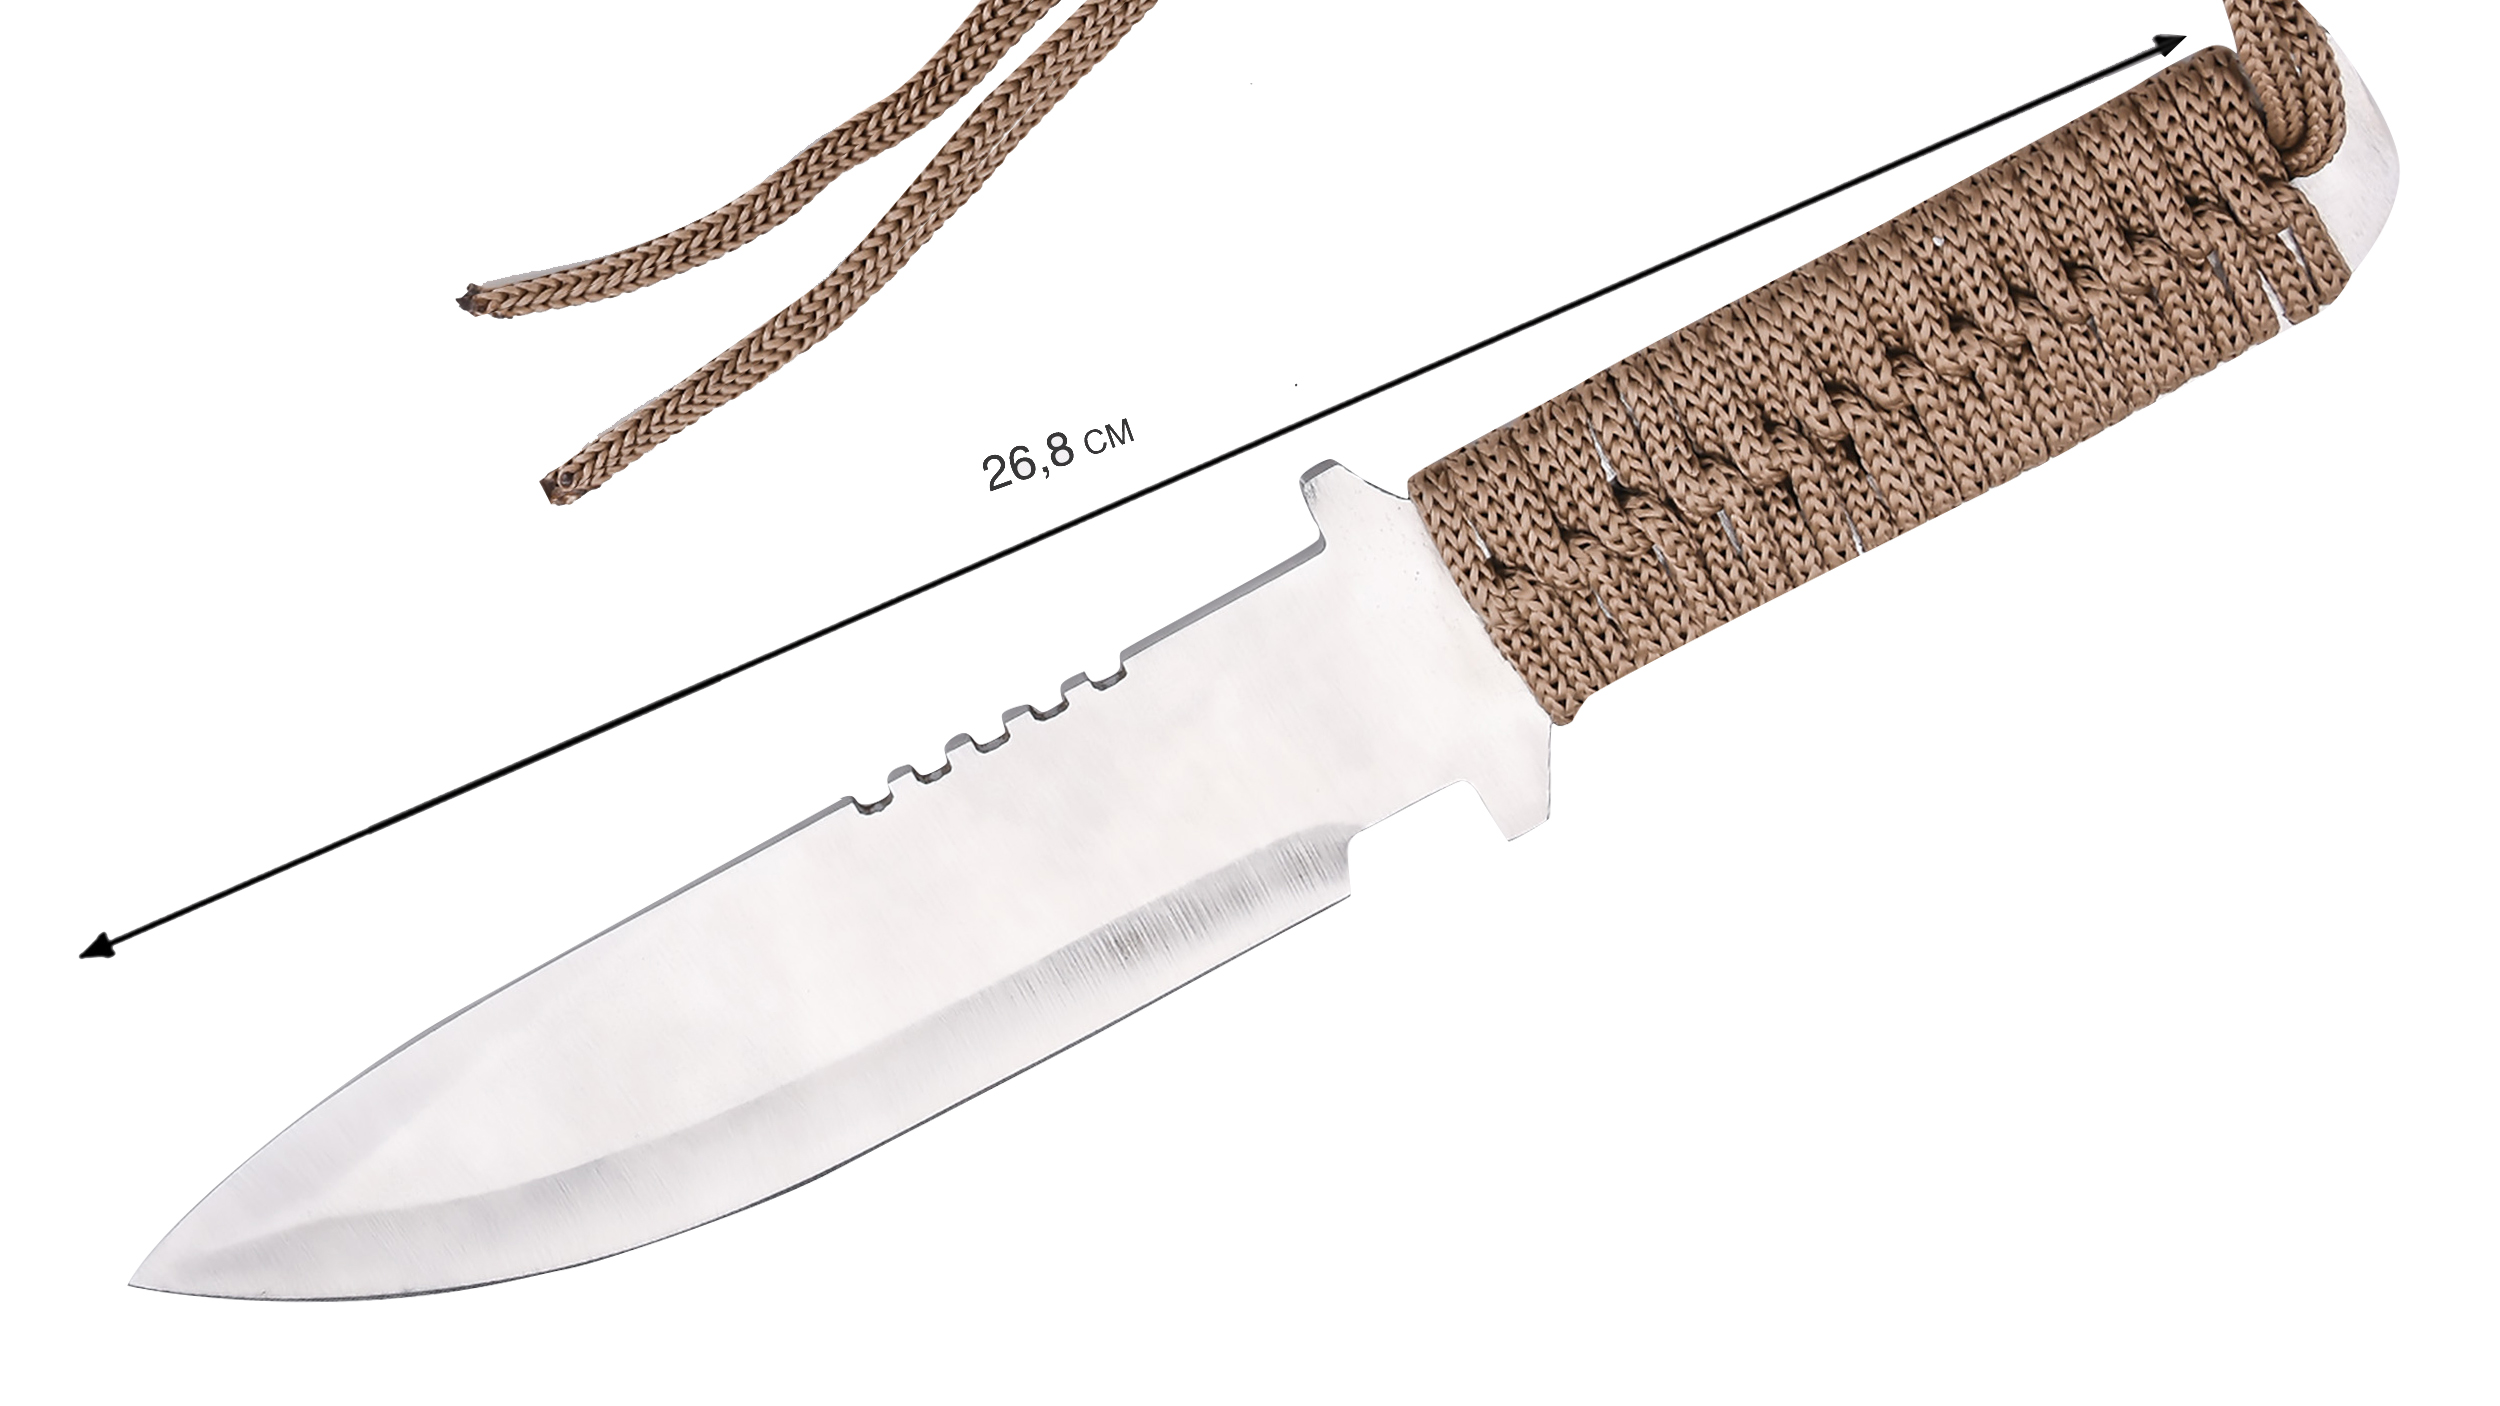 Купить туристический нож для выживания по выгодной цене